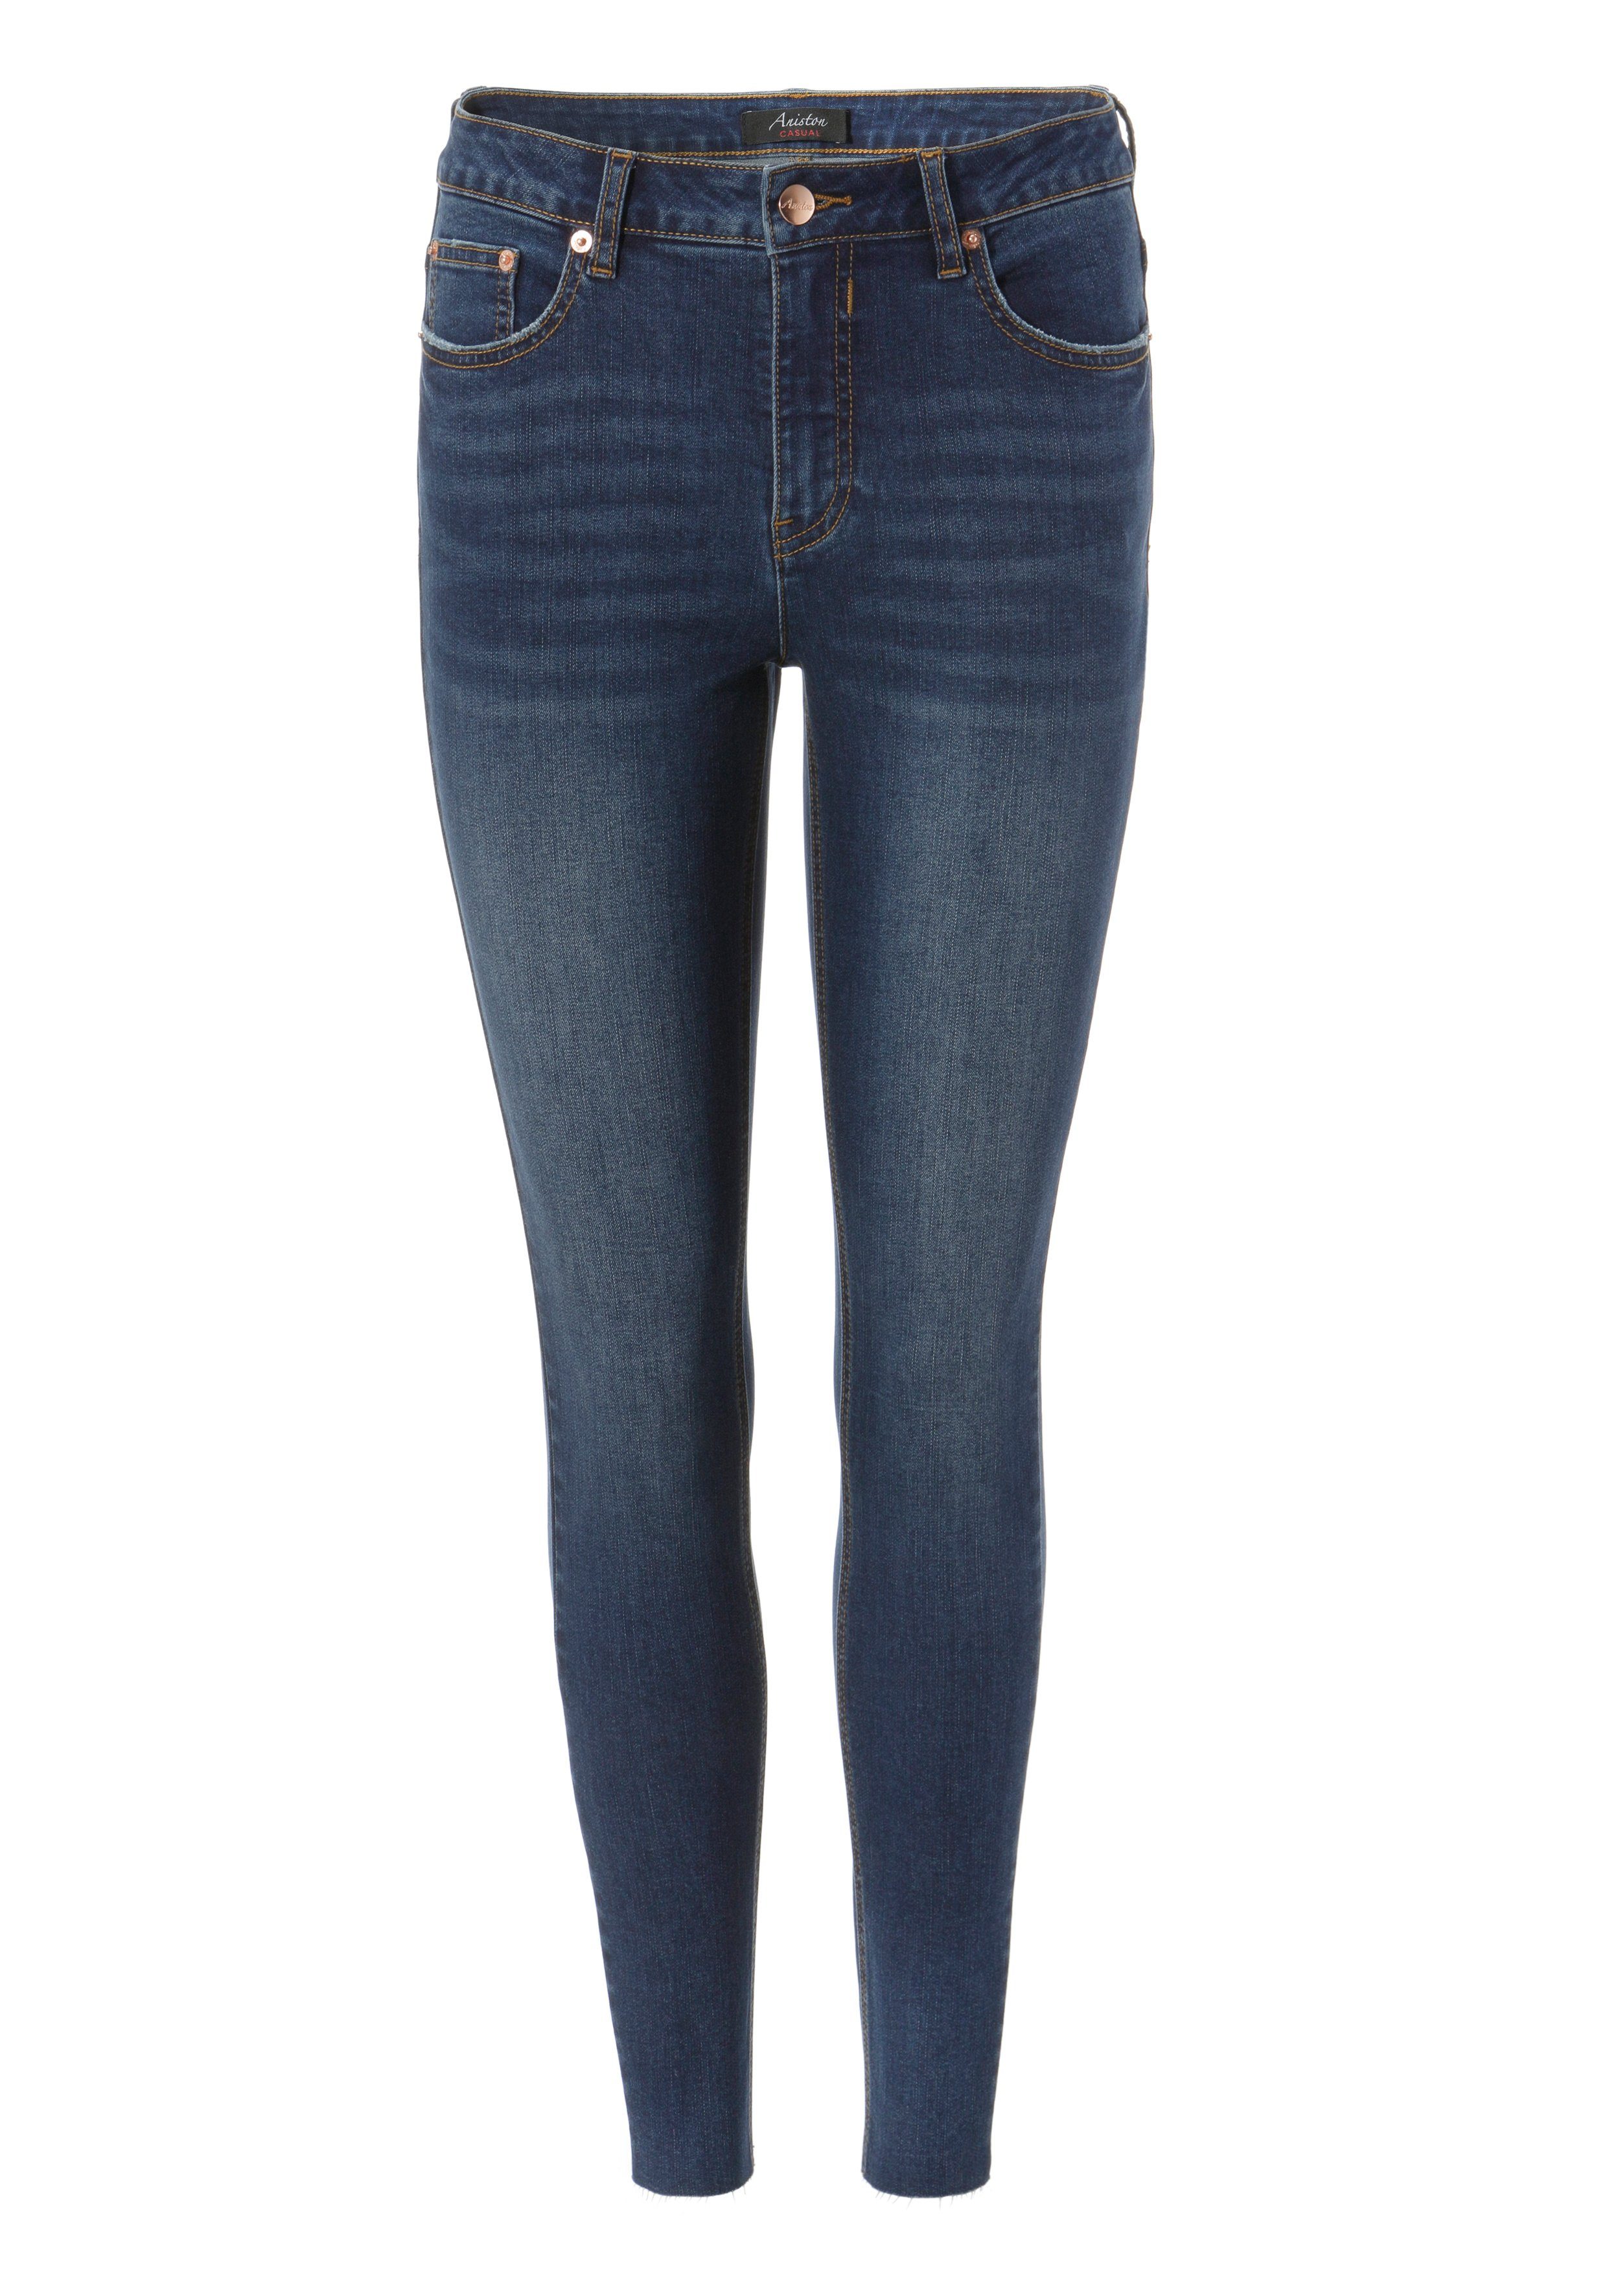 waist Aniston - regular darkblue Beinabschluss mit CASUAL Skinny-fit-Jeans ausgefransten